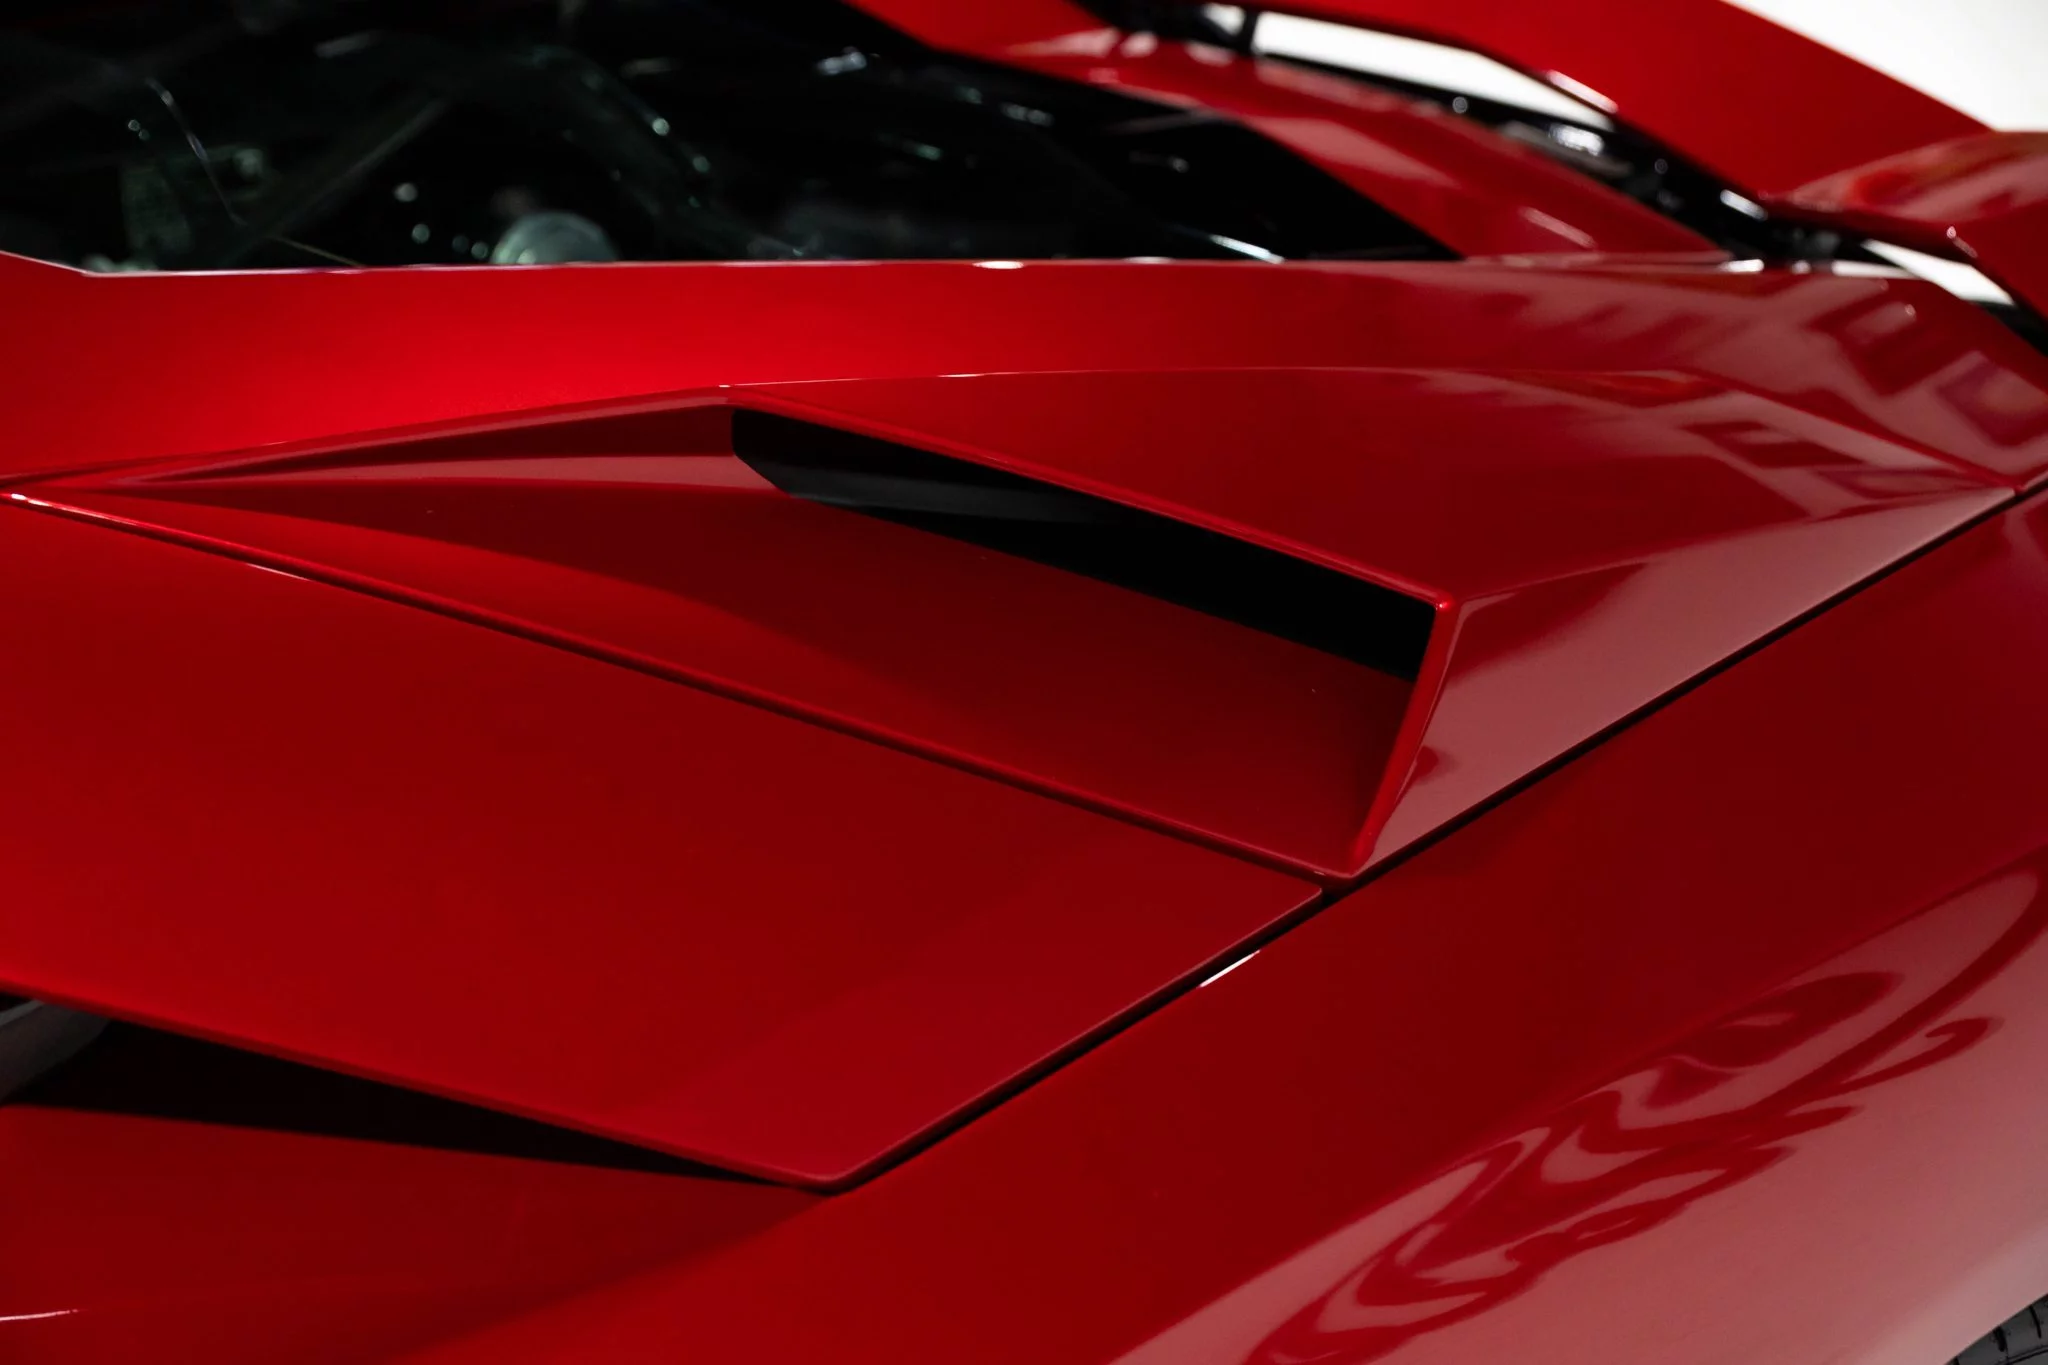 Rosso Efesto Lamborghini Aventador